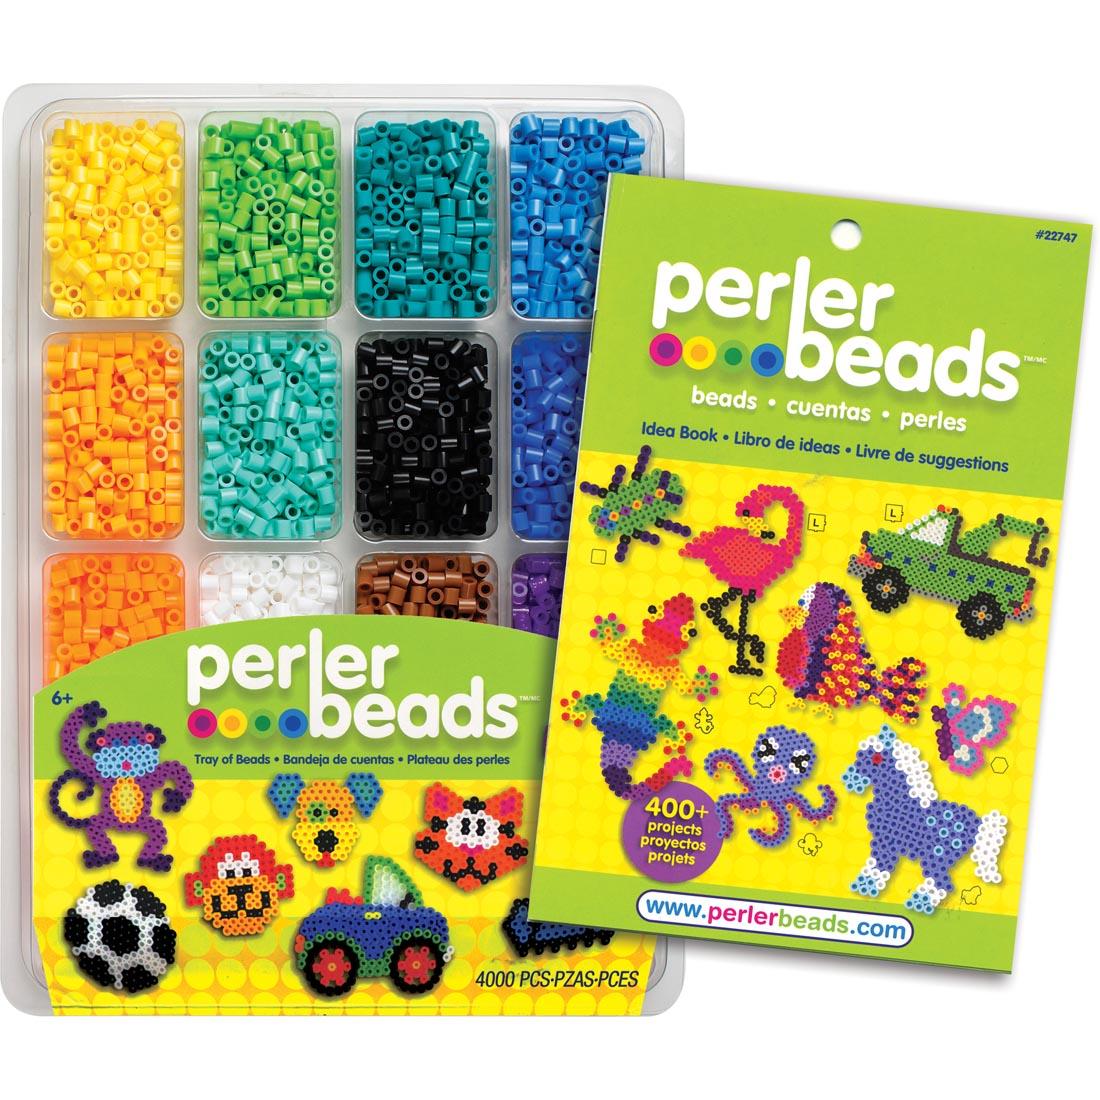 Perler Beads Tray of Beads